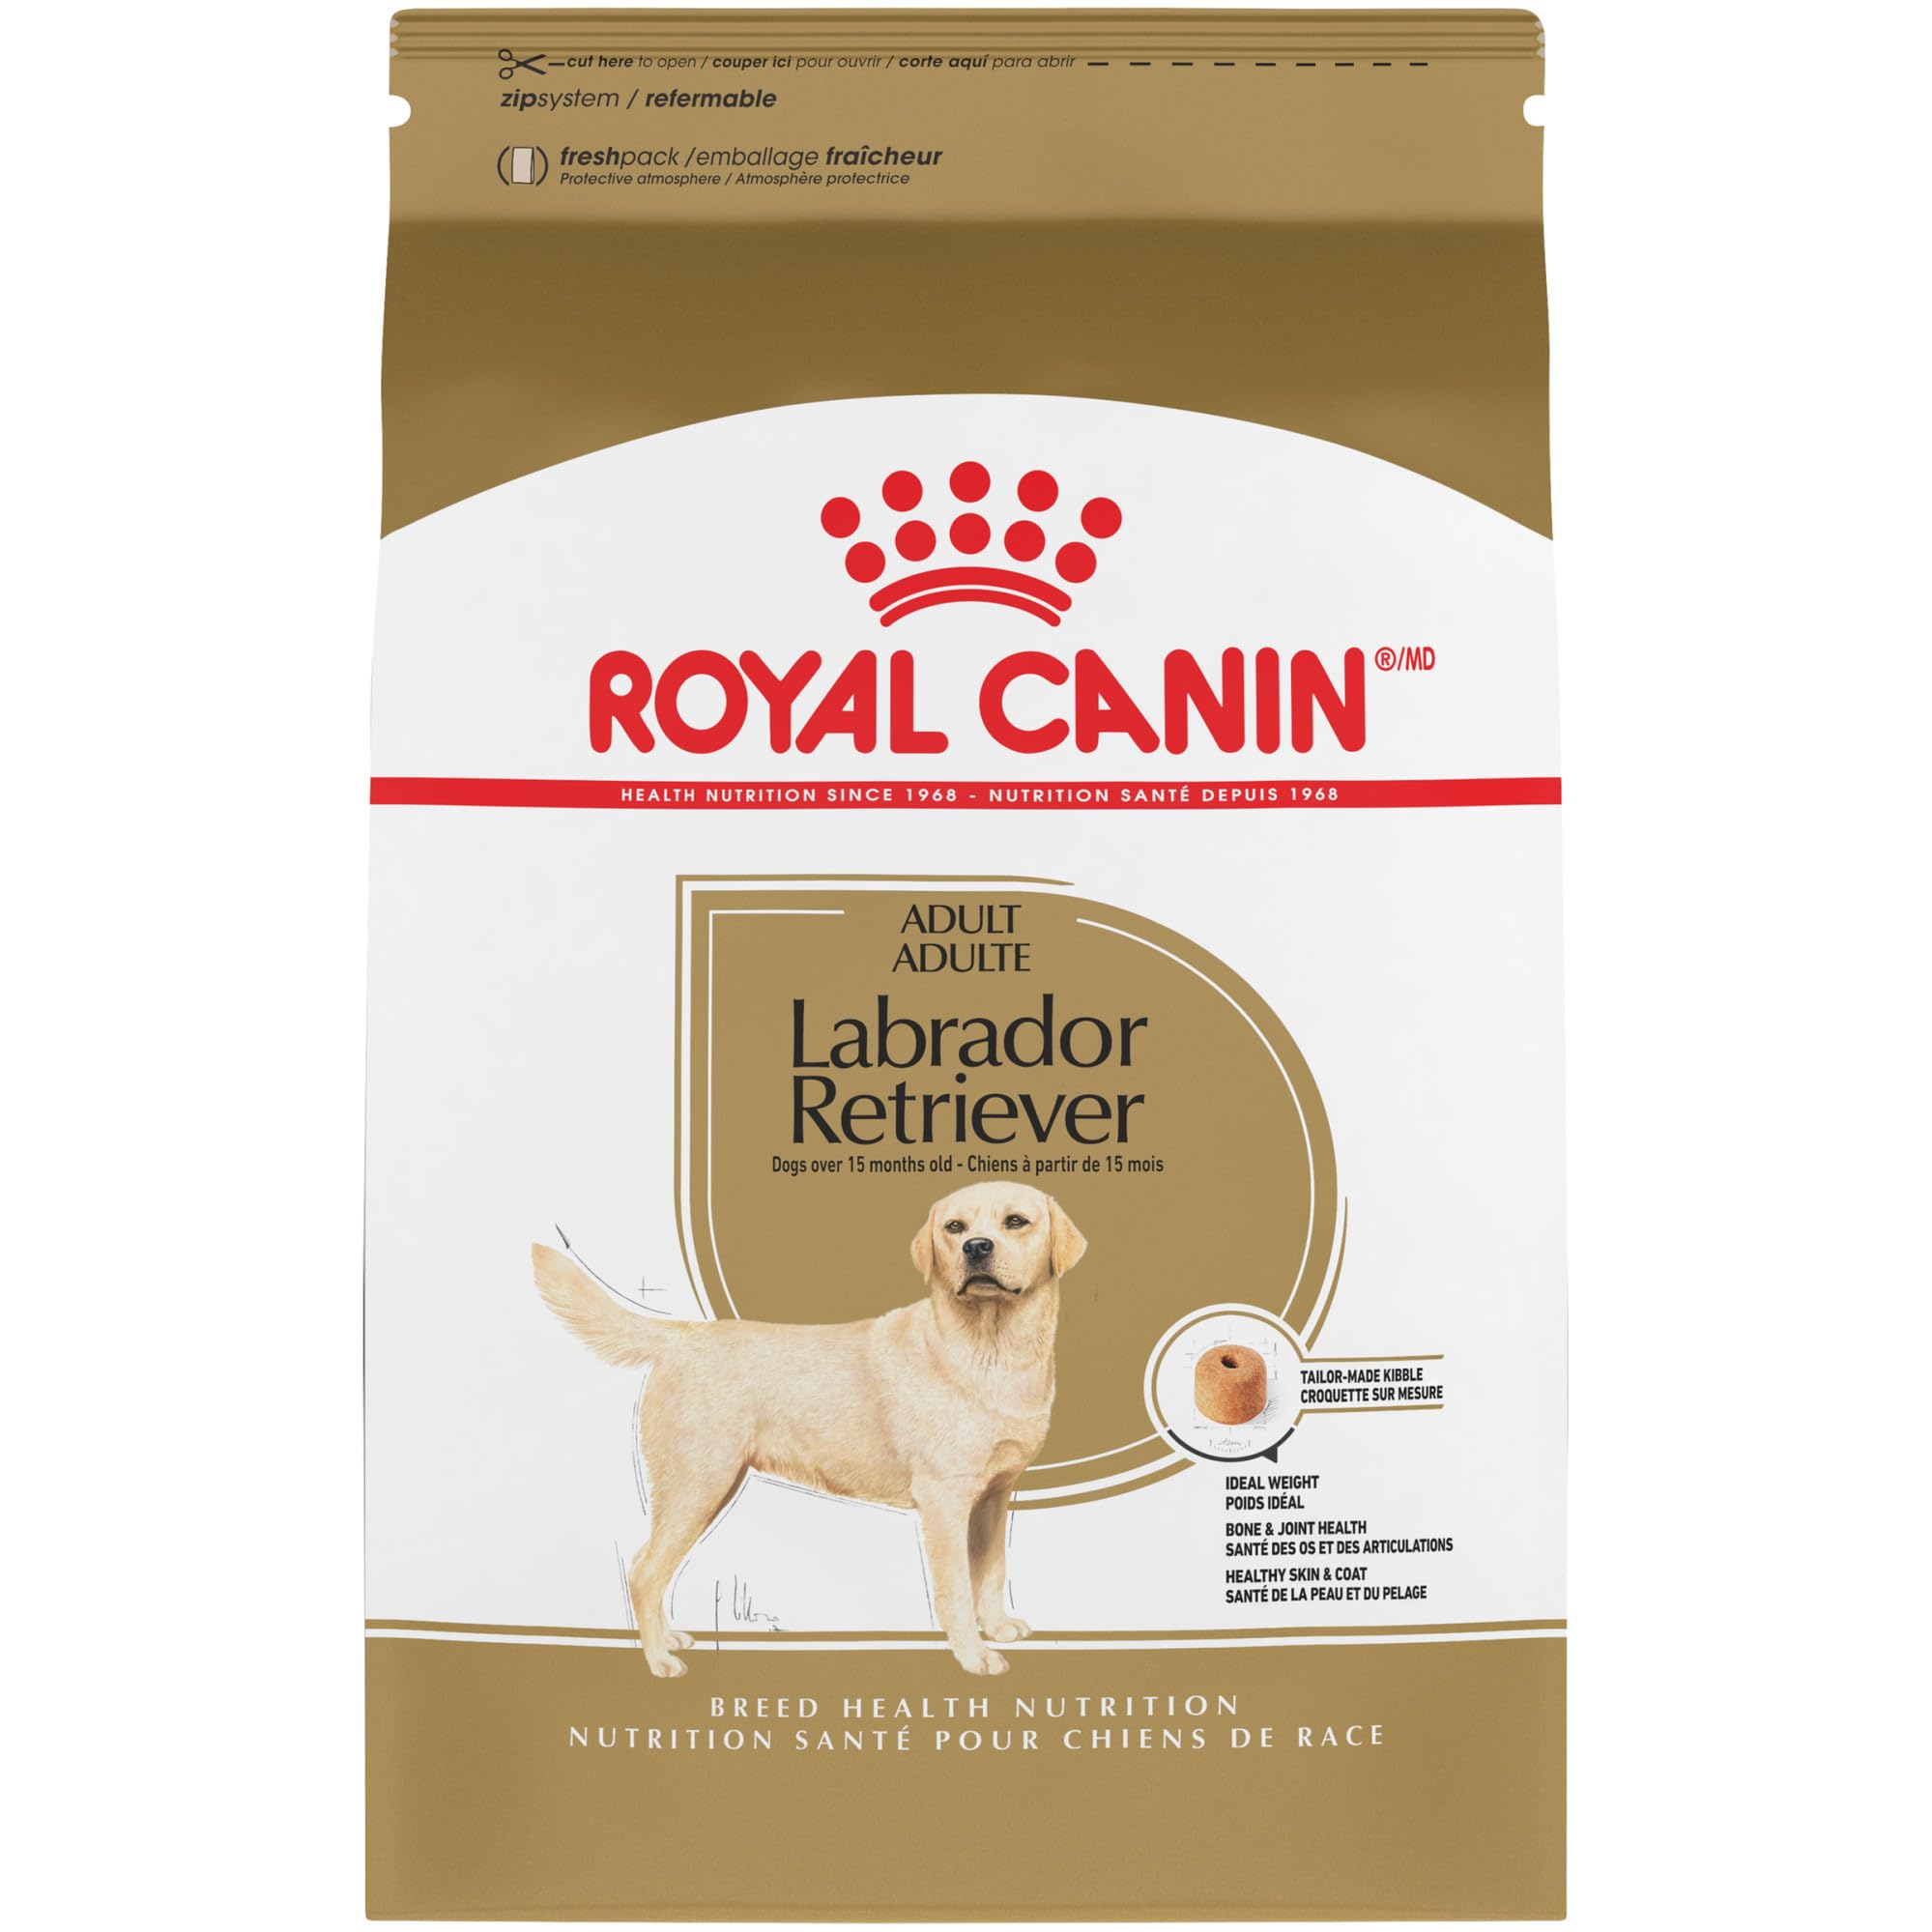 Royal Canin لابرادور ريتريفر طعام جاف للكلاب البالغة